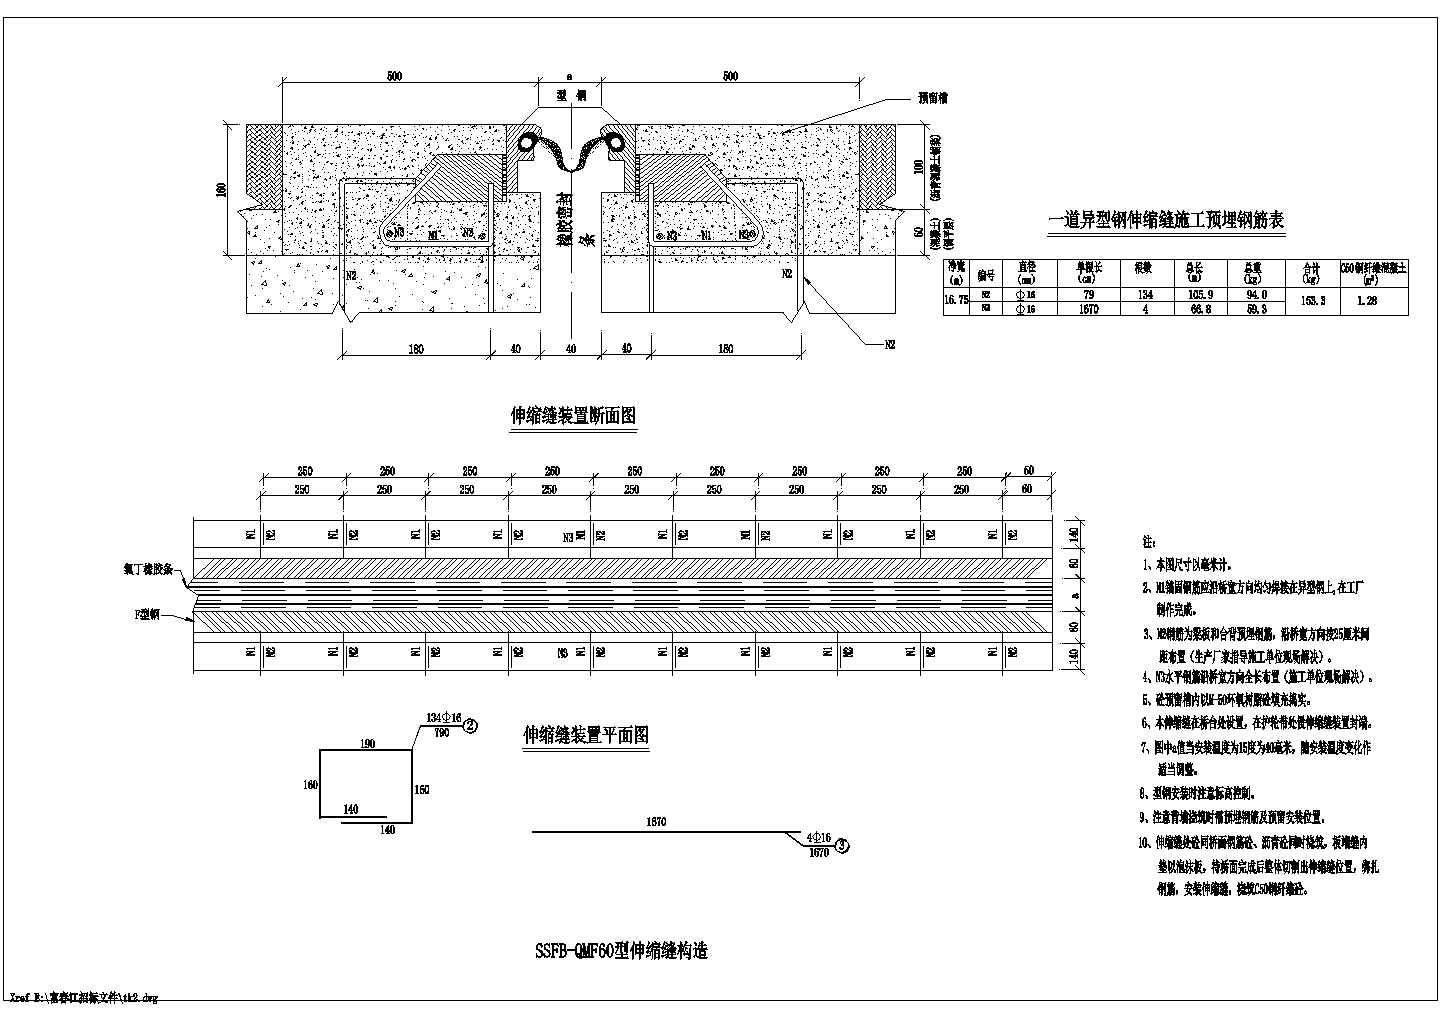 富春江桥连续箱梁桥上部结构初步设计图